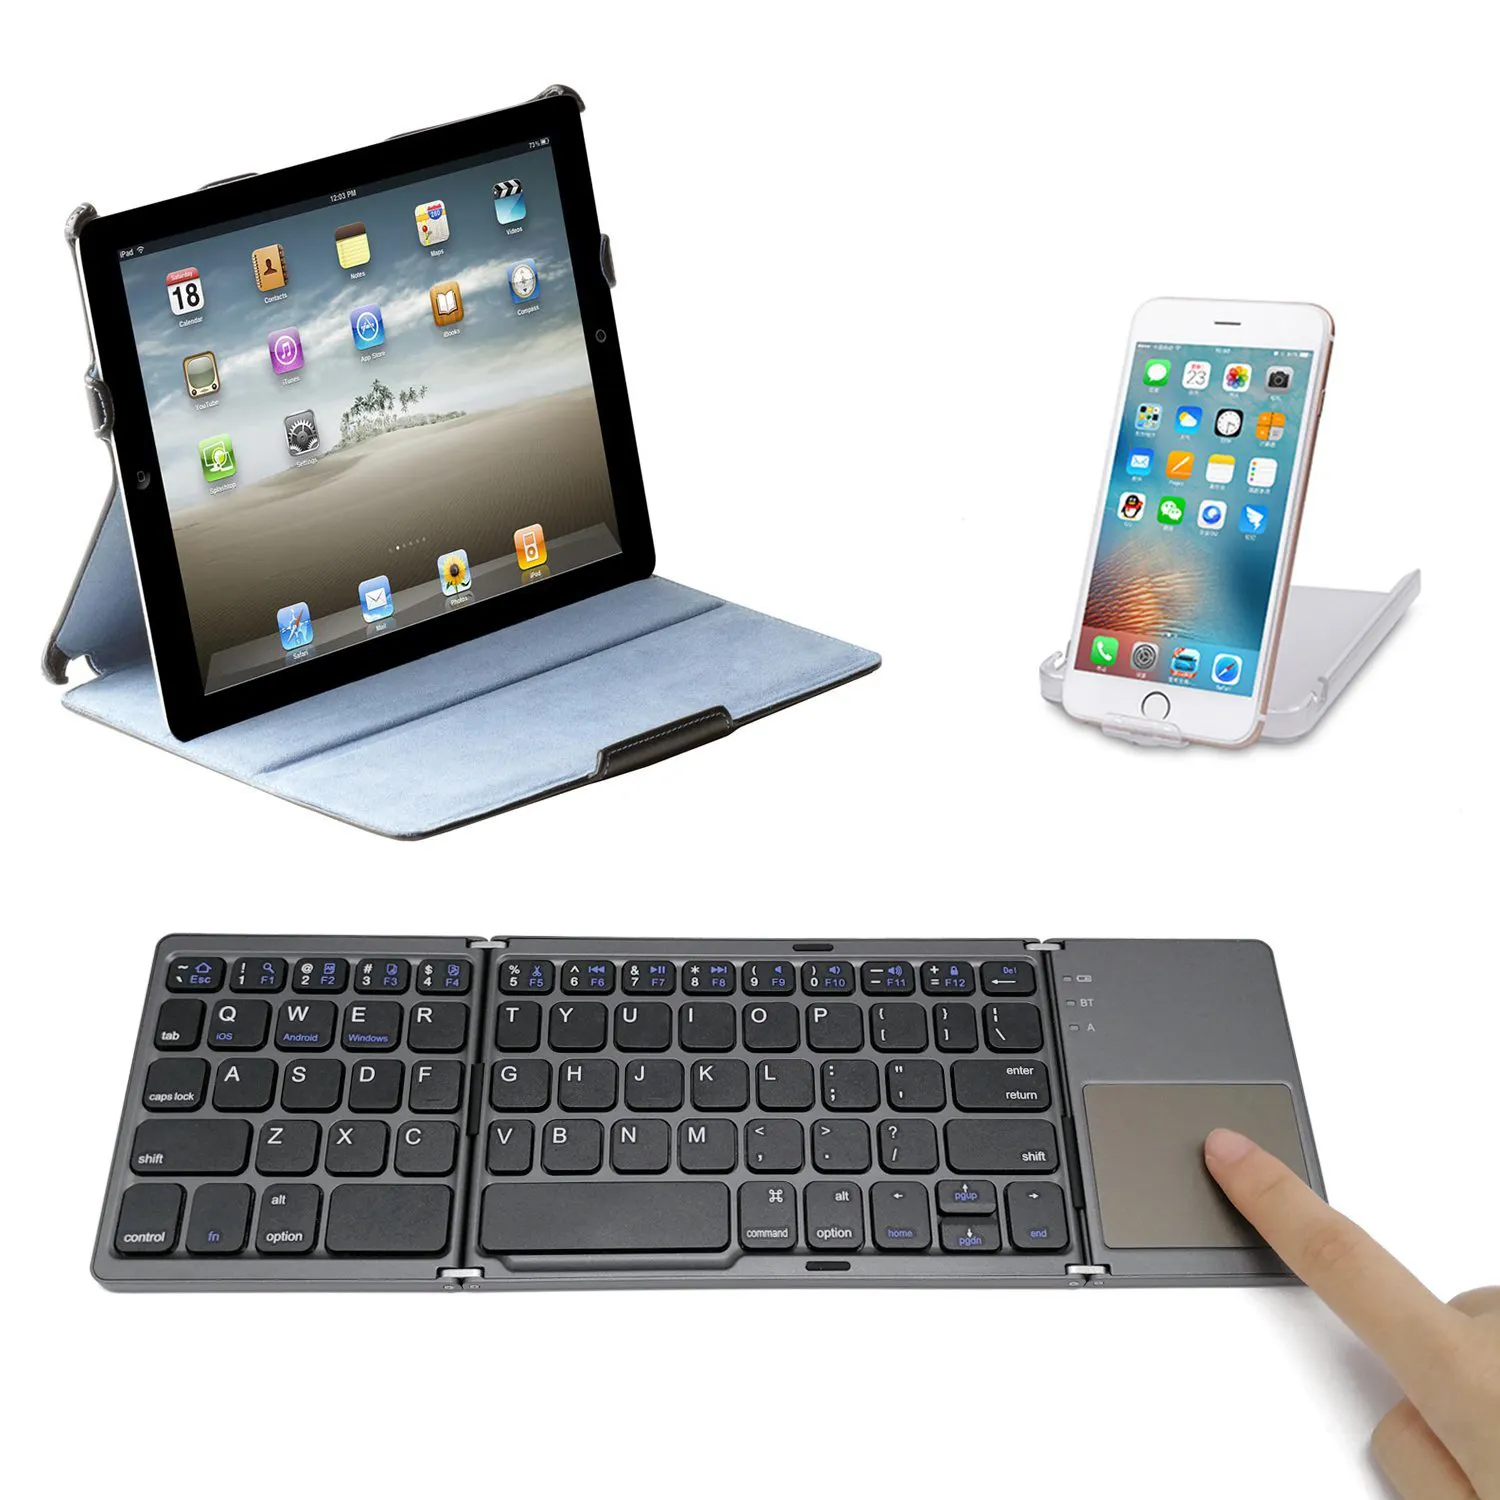 Dreifach faltbare faltbare Mini BT kabellose Tastatur mit Touchpad für Windows Android iOS Tablet PC Smart Phone